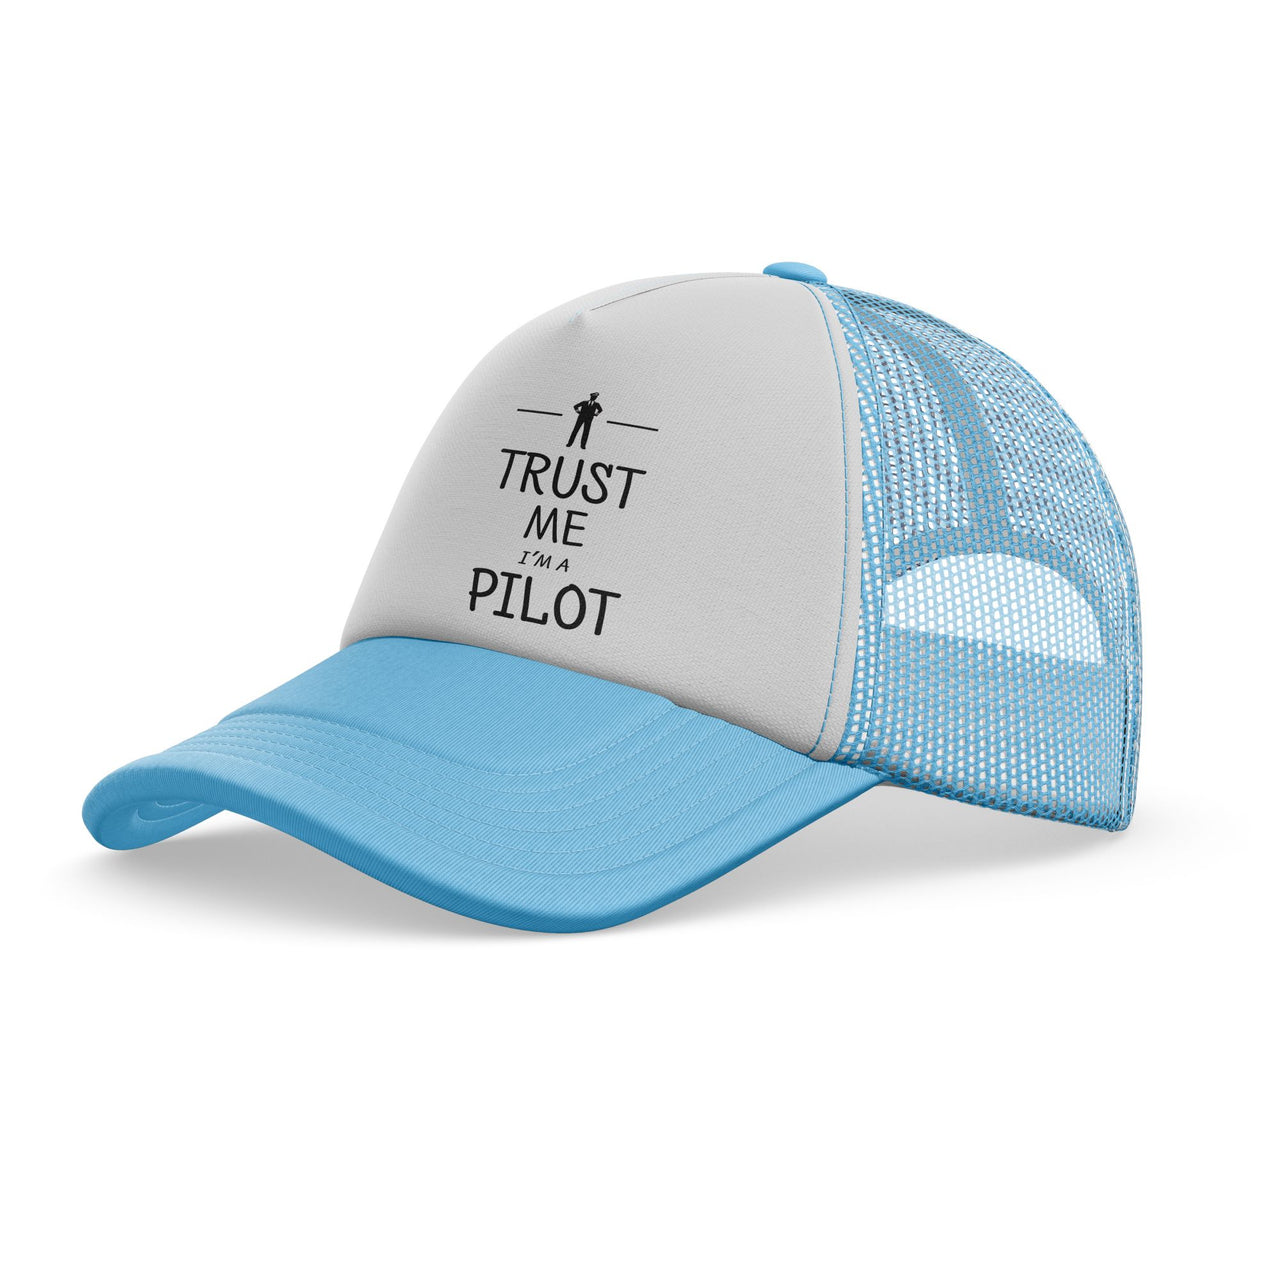 Trust Me I'm a Pilot Designed Trucker Caps & Hats